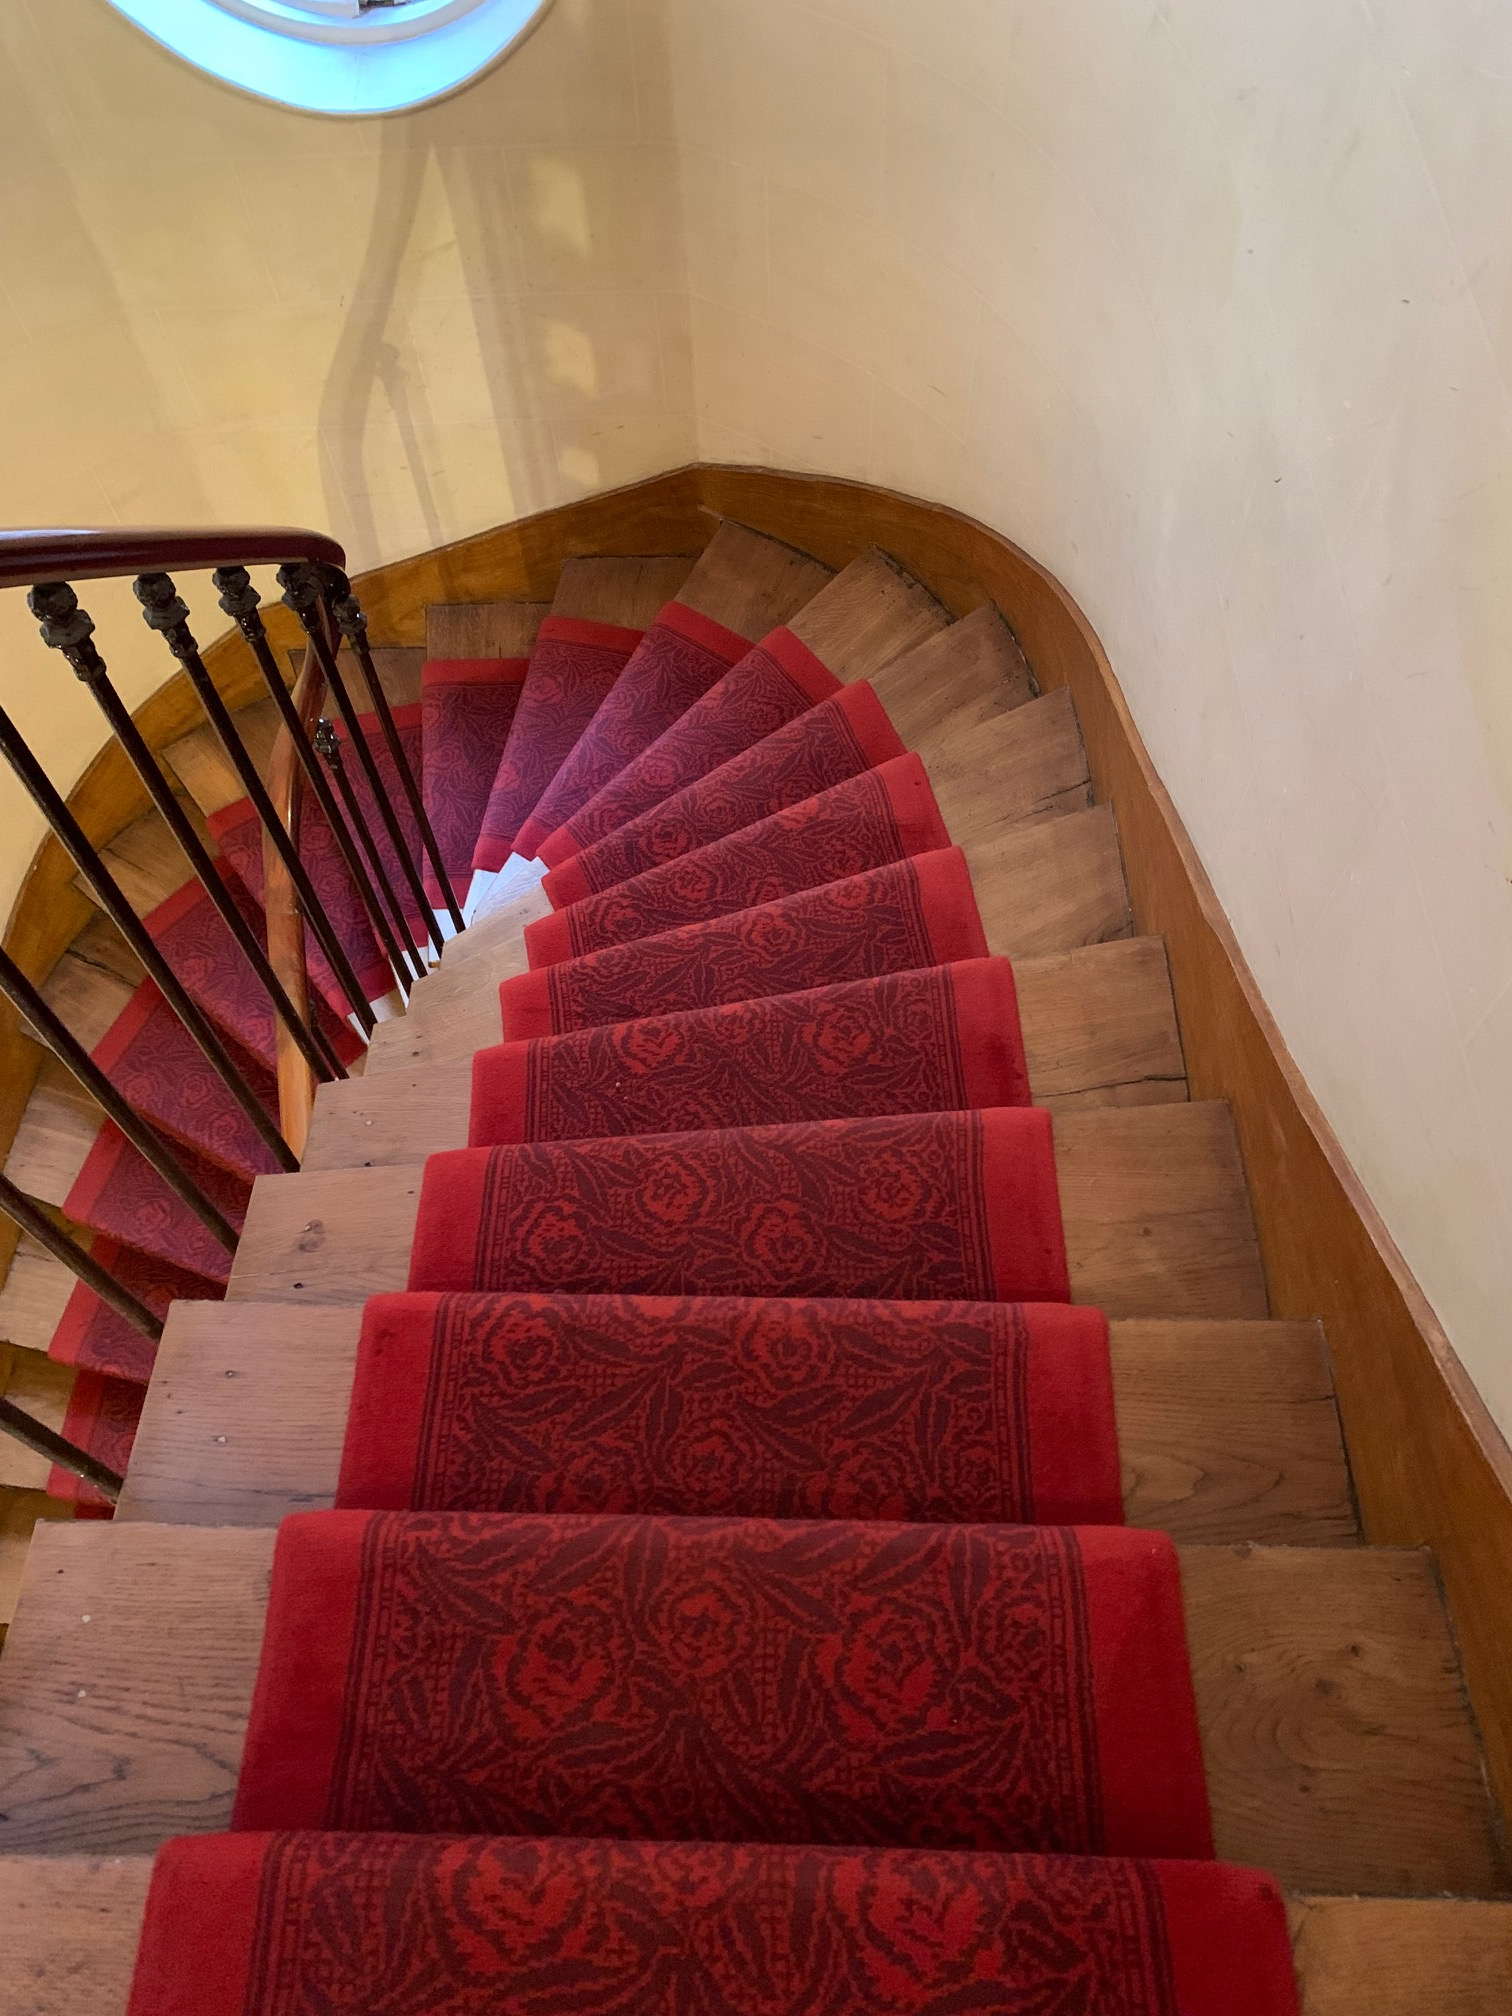 退屈日記「階段に敷かれた絨毯の謎。渡仏２０年目にして偶然の大発見」